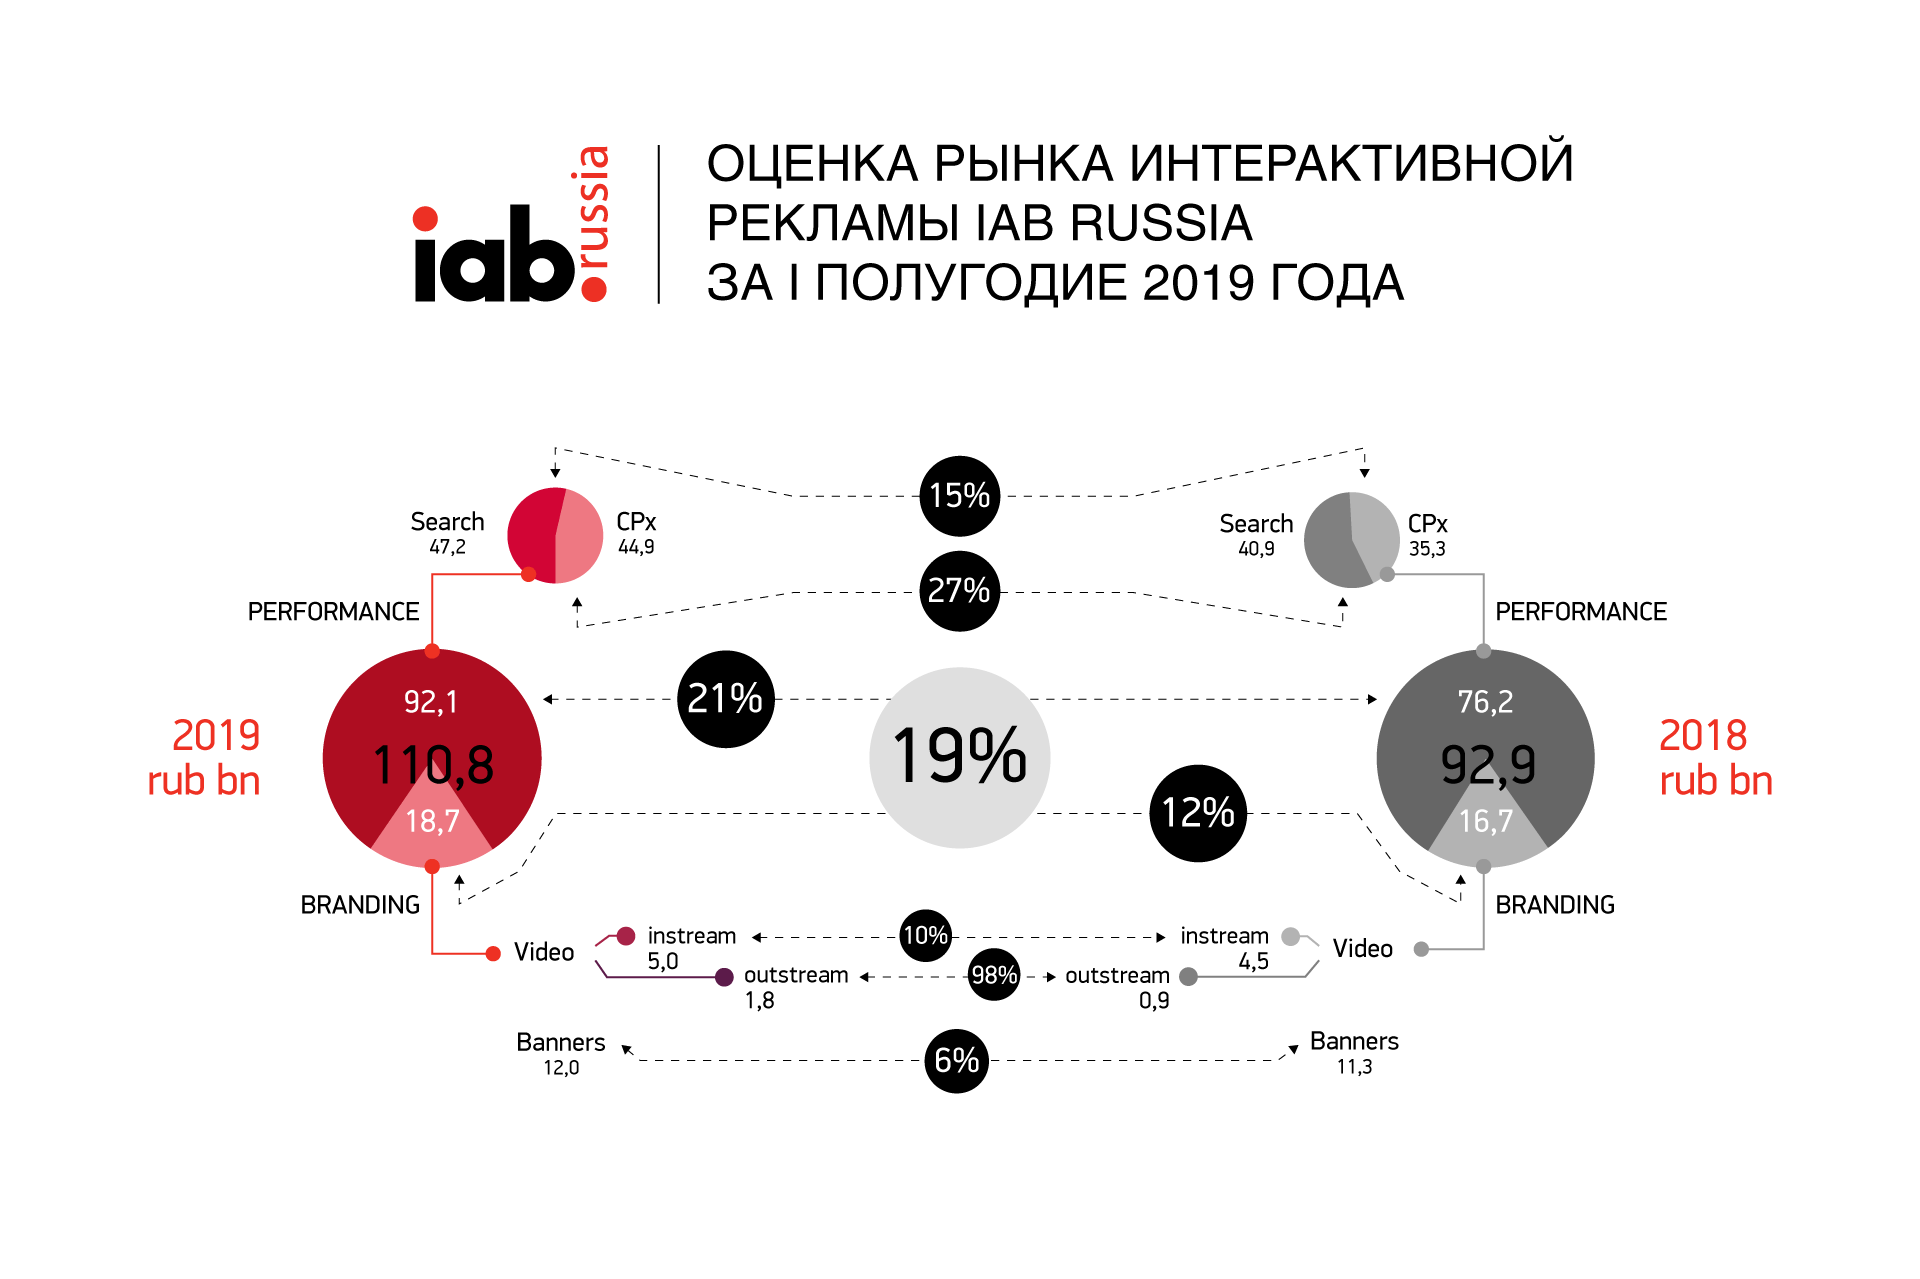 IAB RUSSIA оценила объем рынка интернет-рекламы в первом полугодии 2019